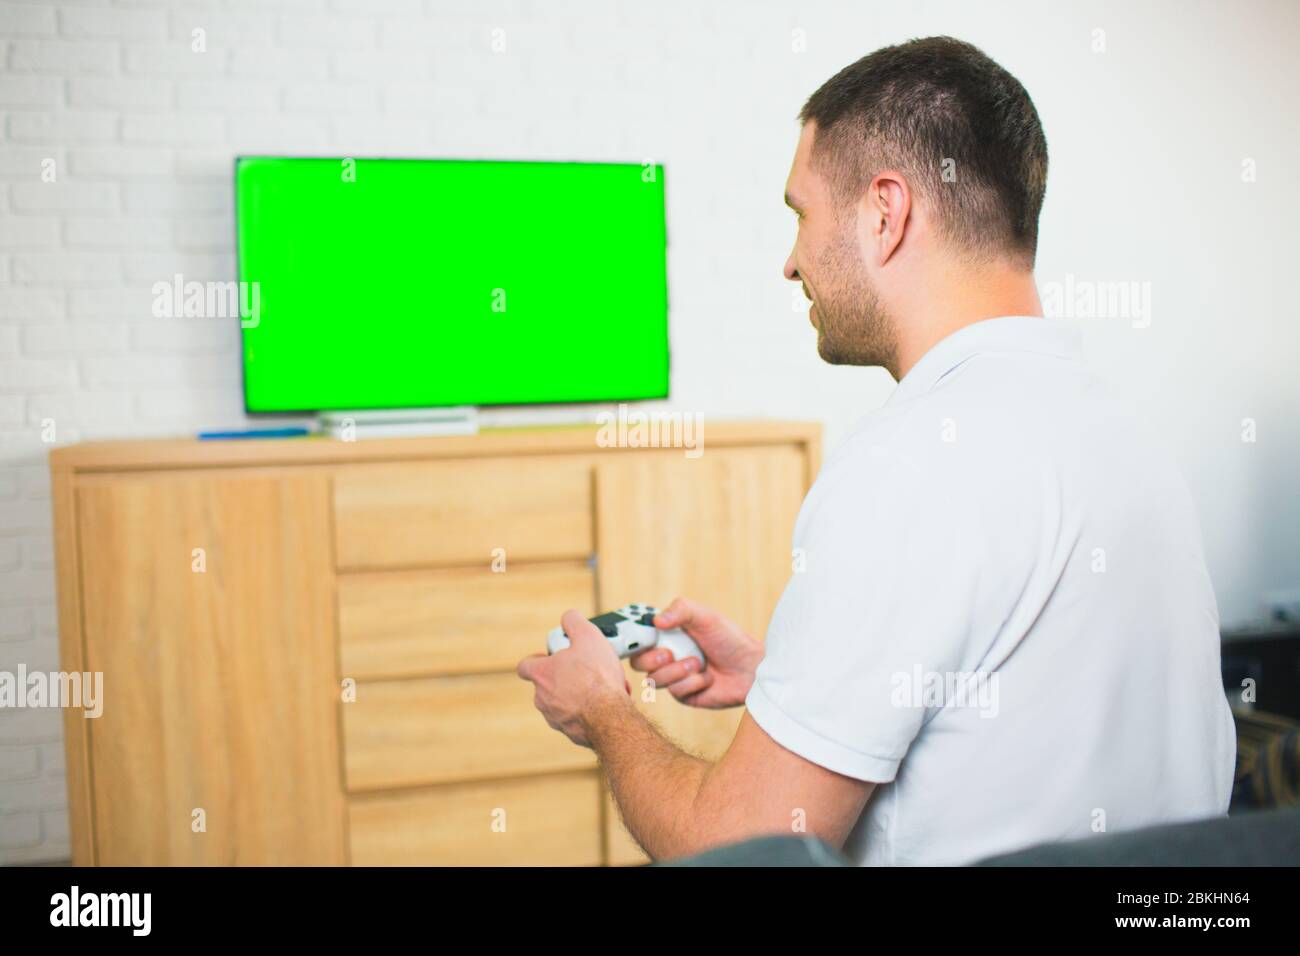 Junger Mann sitzt während der Quarantäne im Zimmer. Guy Spiele allein mit Joystick oder Gamepad. Grüner Bildschirm auf dem fernseher. Spielvergnügen. Stockfoto